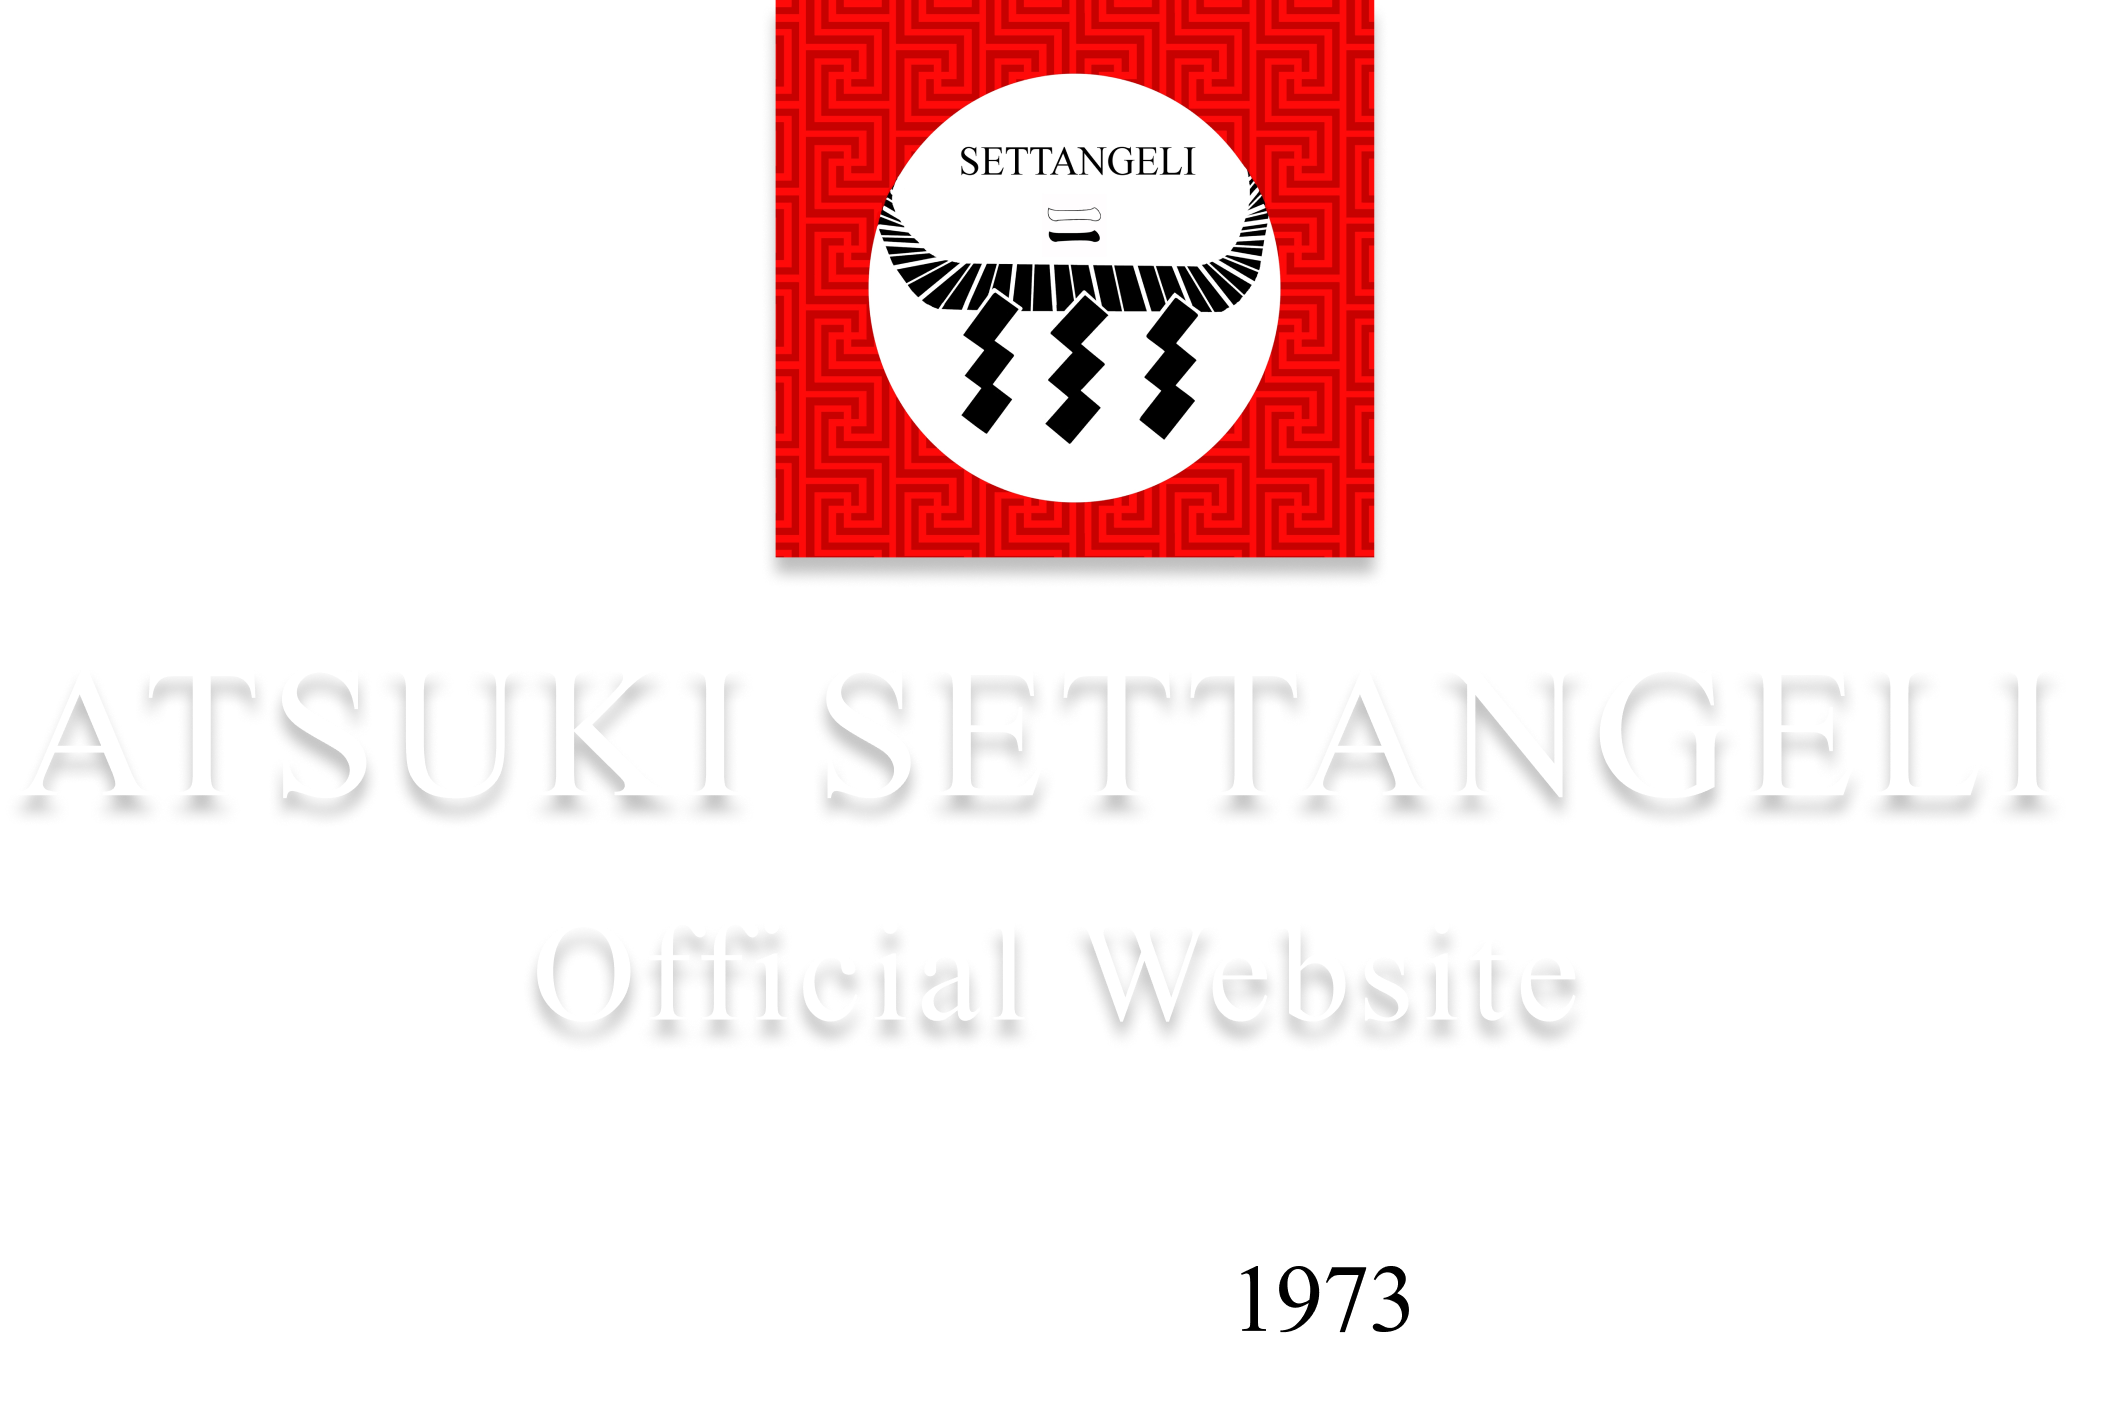 atsuki settangeli official website